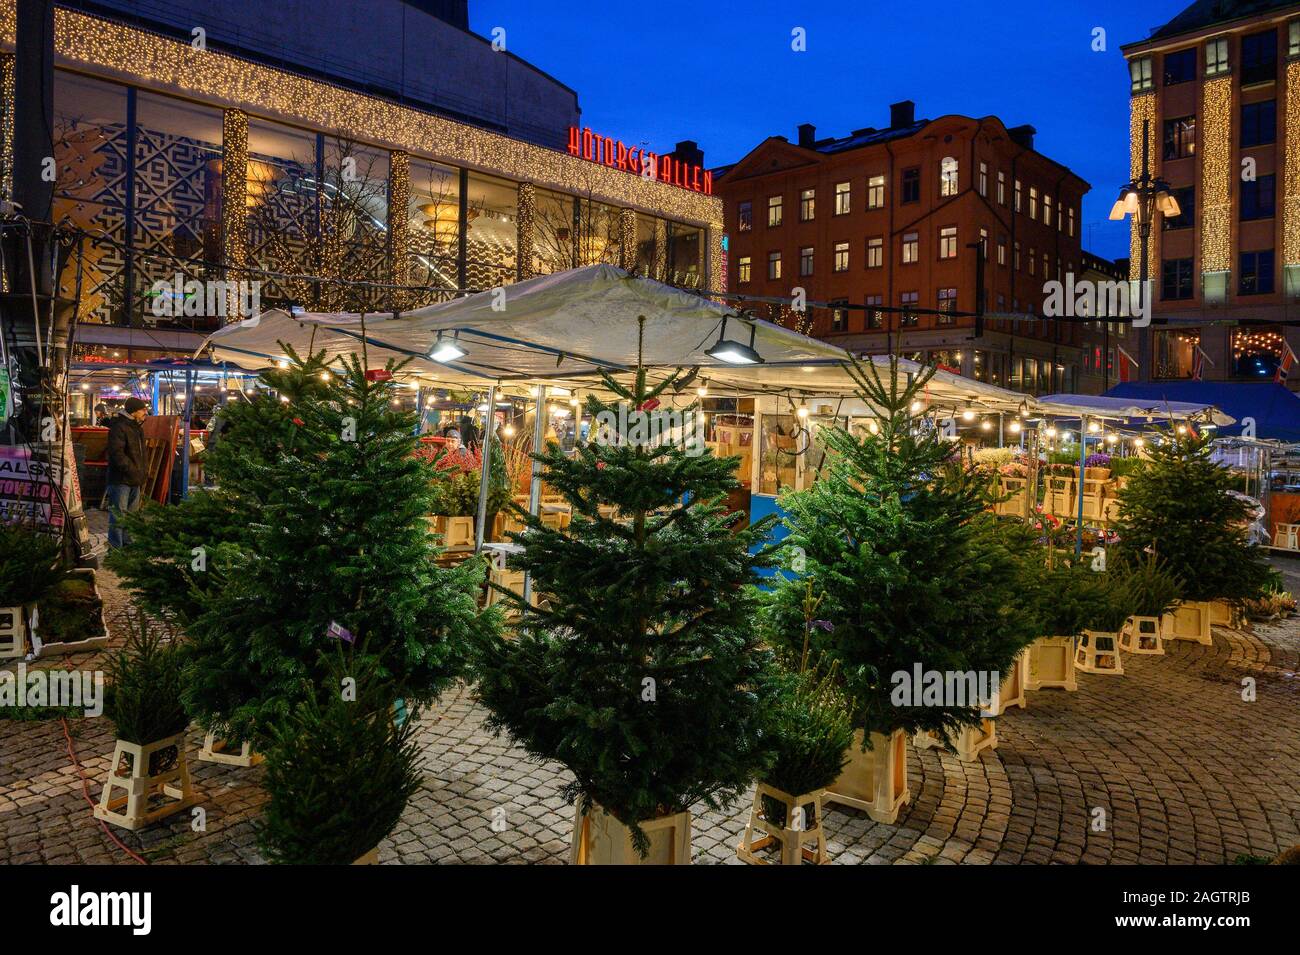 Stoccolma, Svezia, 18 Dicembre 2019: Natale atmosfera della città. Albero di natale vendita presso la piazza Hotorget nel centro di Stoccolma. Viaggi invernali Foto Stock